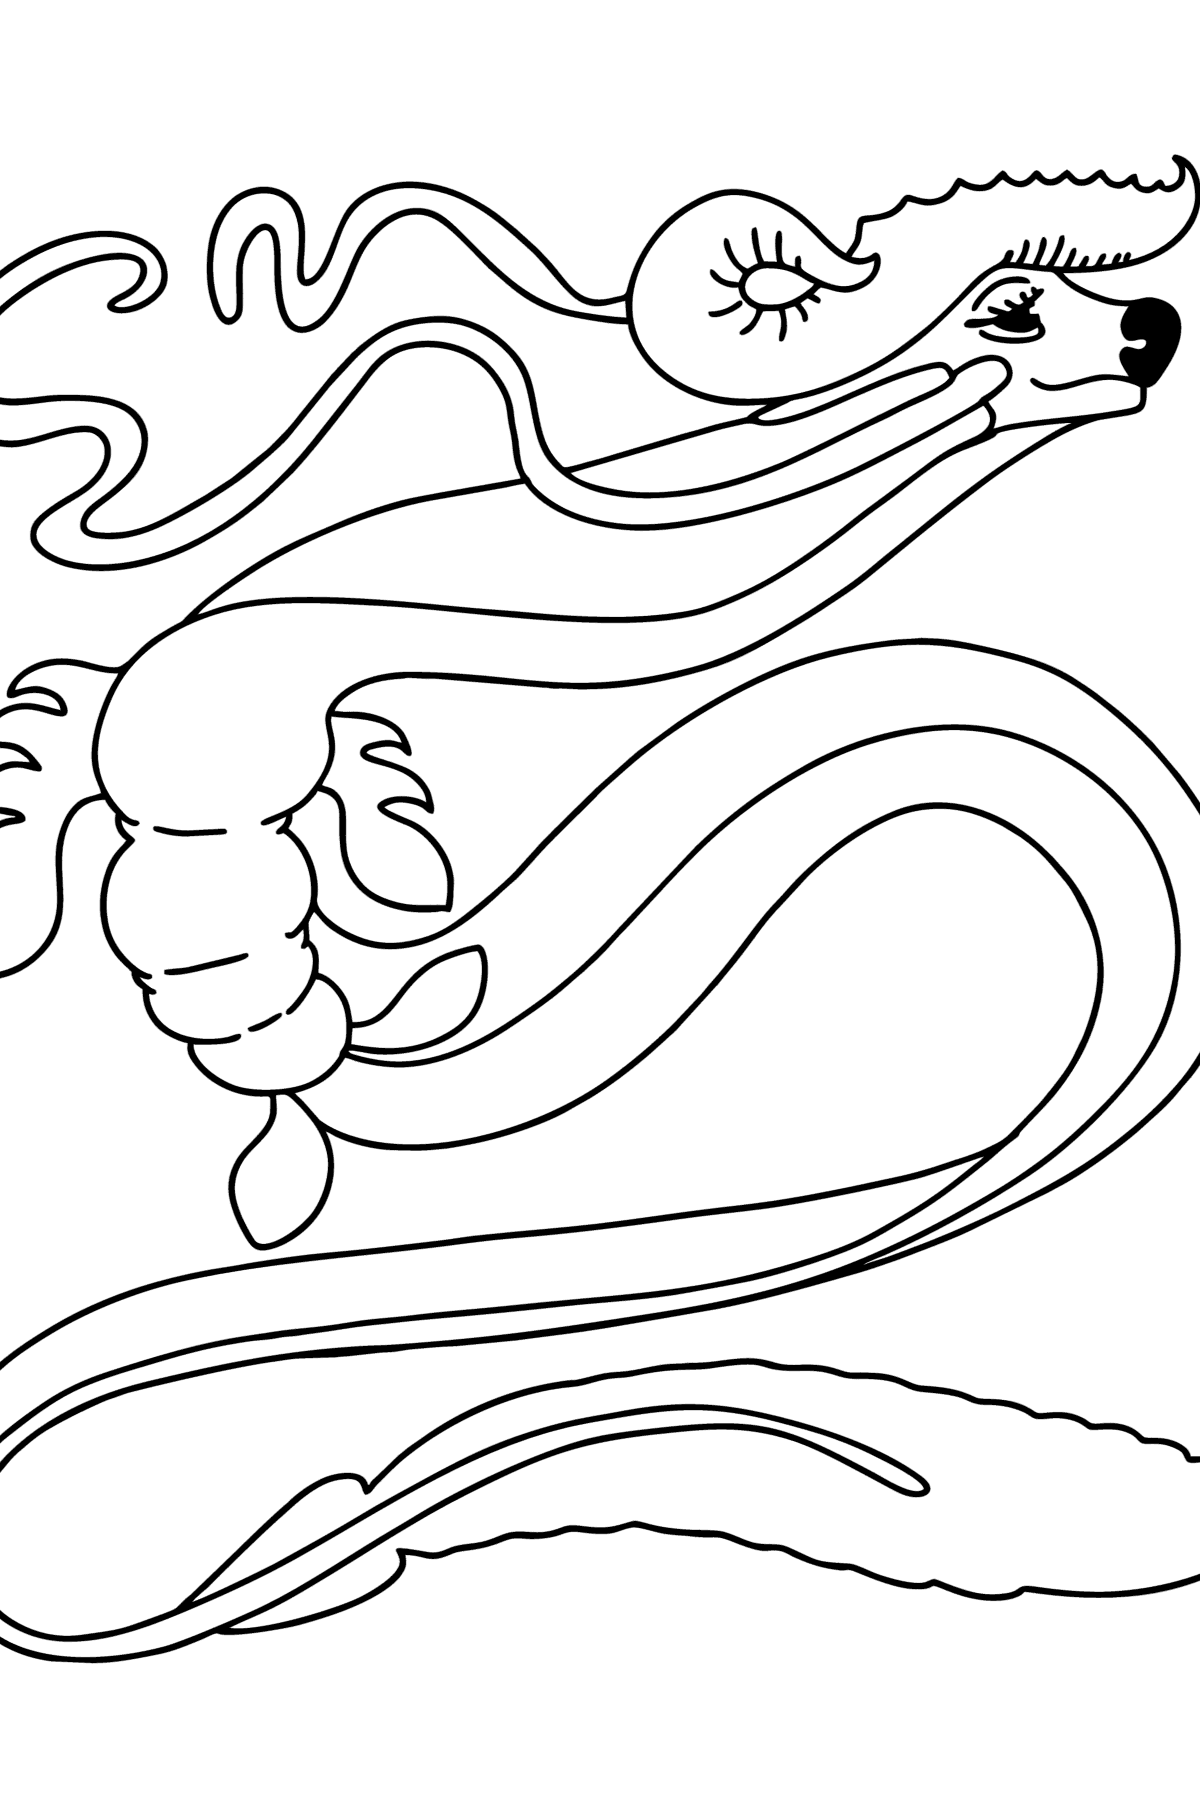 Coloriage - Dragon Serpent - Coloriages pour les Enfants